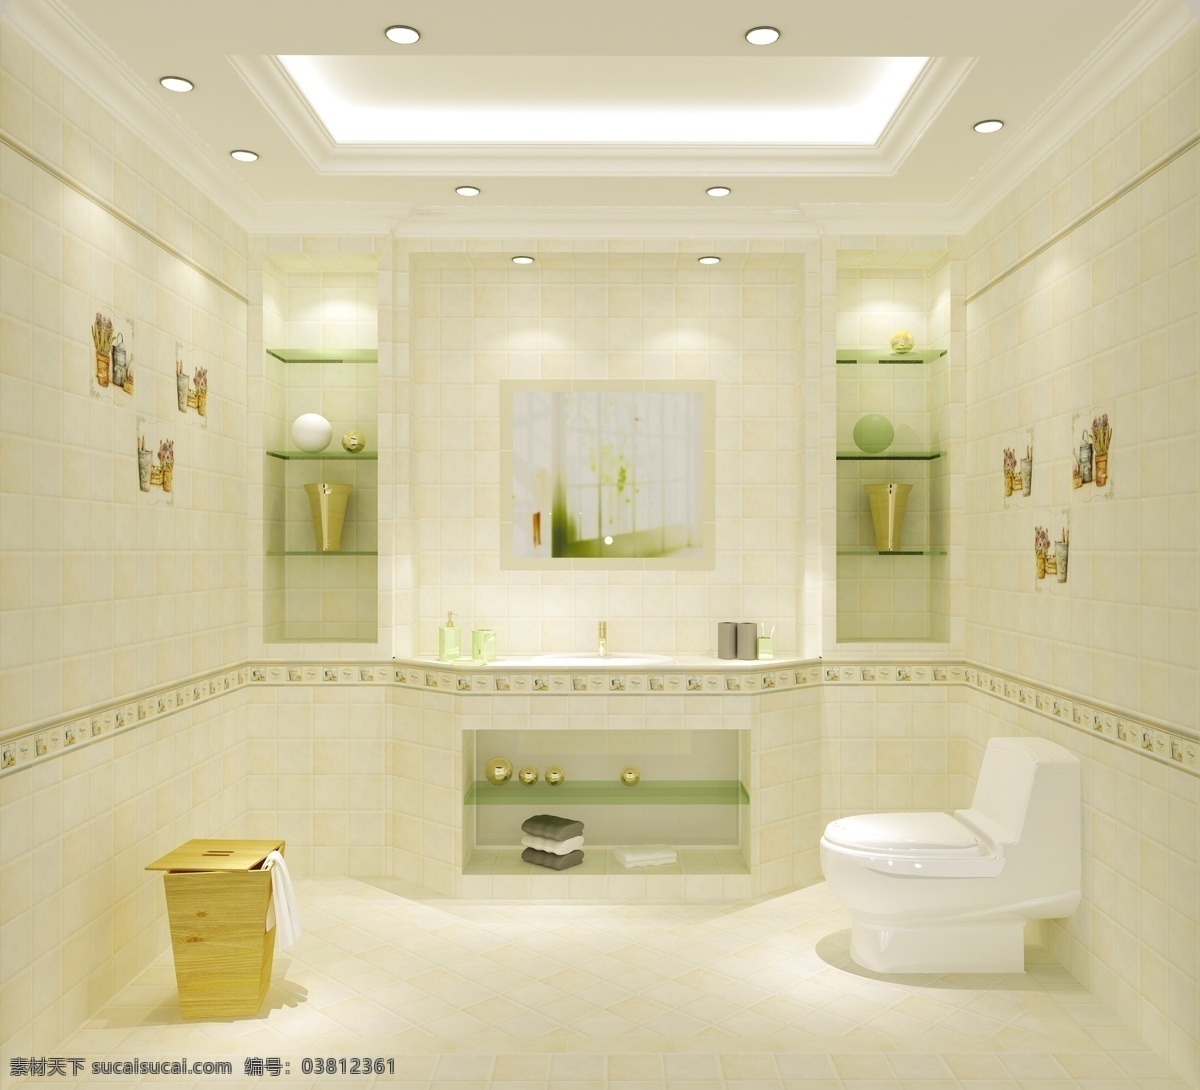 洗手间 卫生间 卫浴 效果图 3d效果图 3d设计 3d作品 黄色